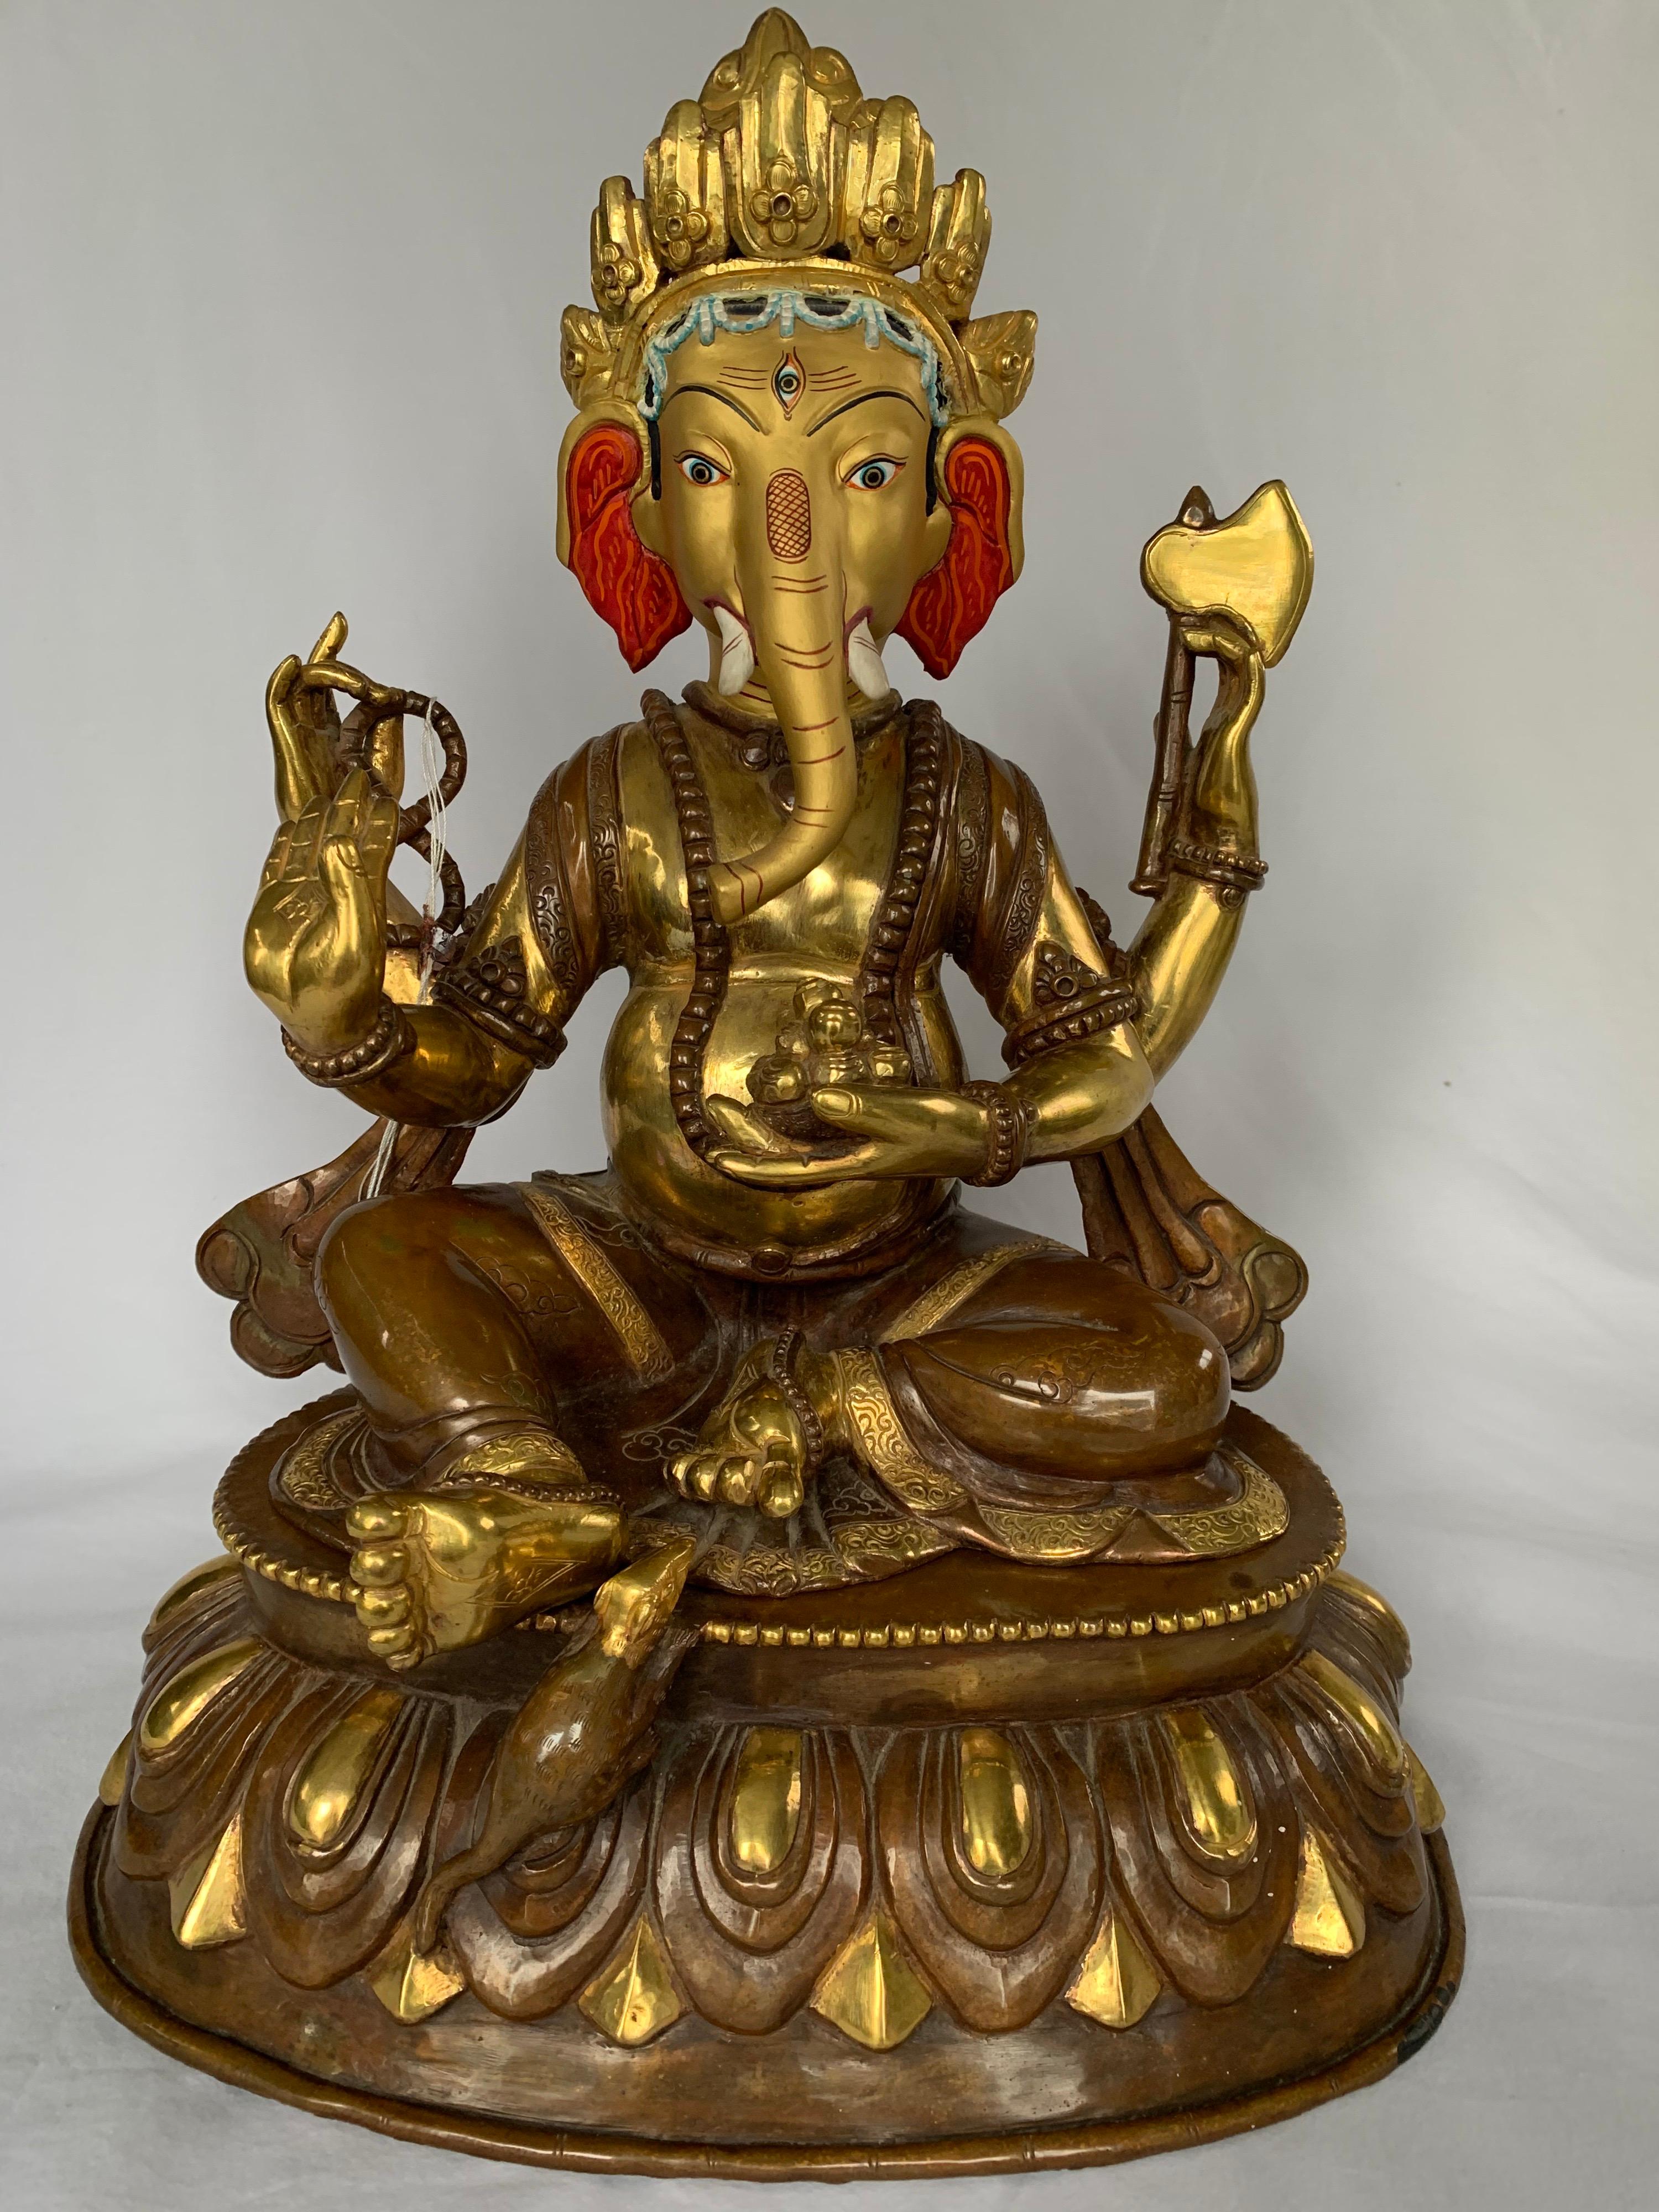  Statue de Ganesh avec or 24 carats fabriquée à la main par procédé de la cire perdue